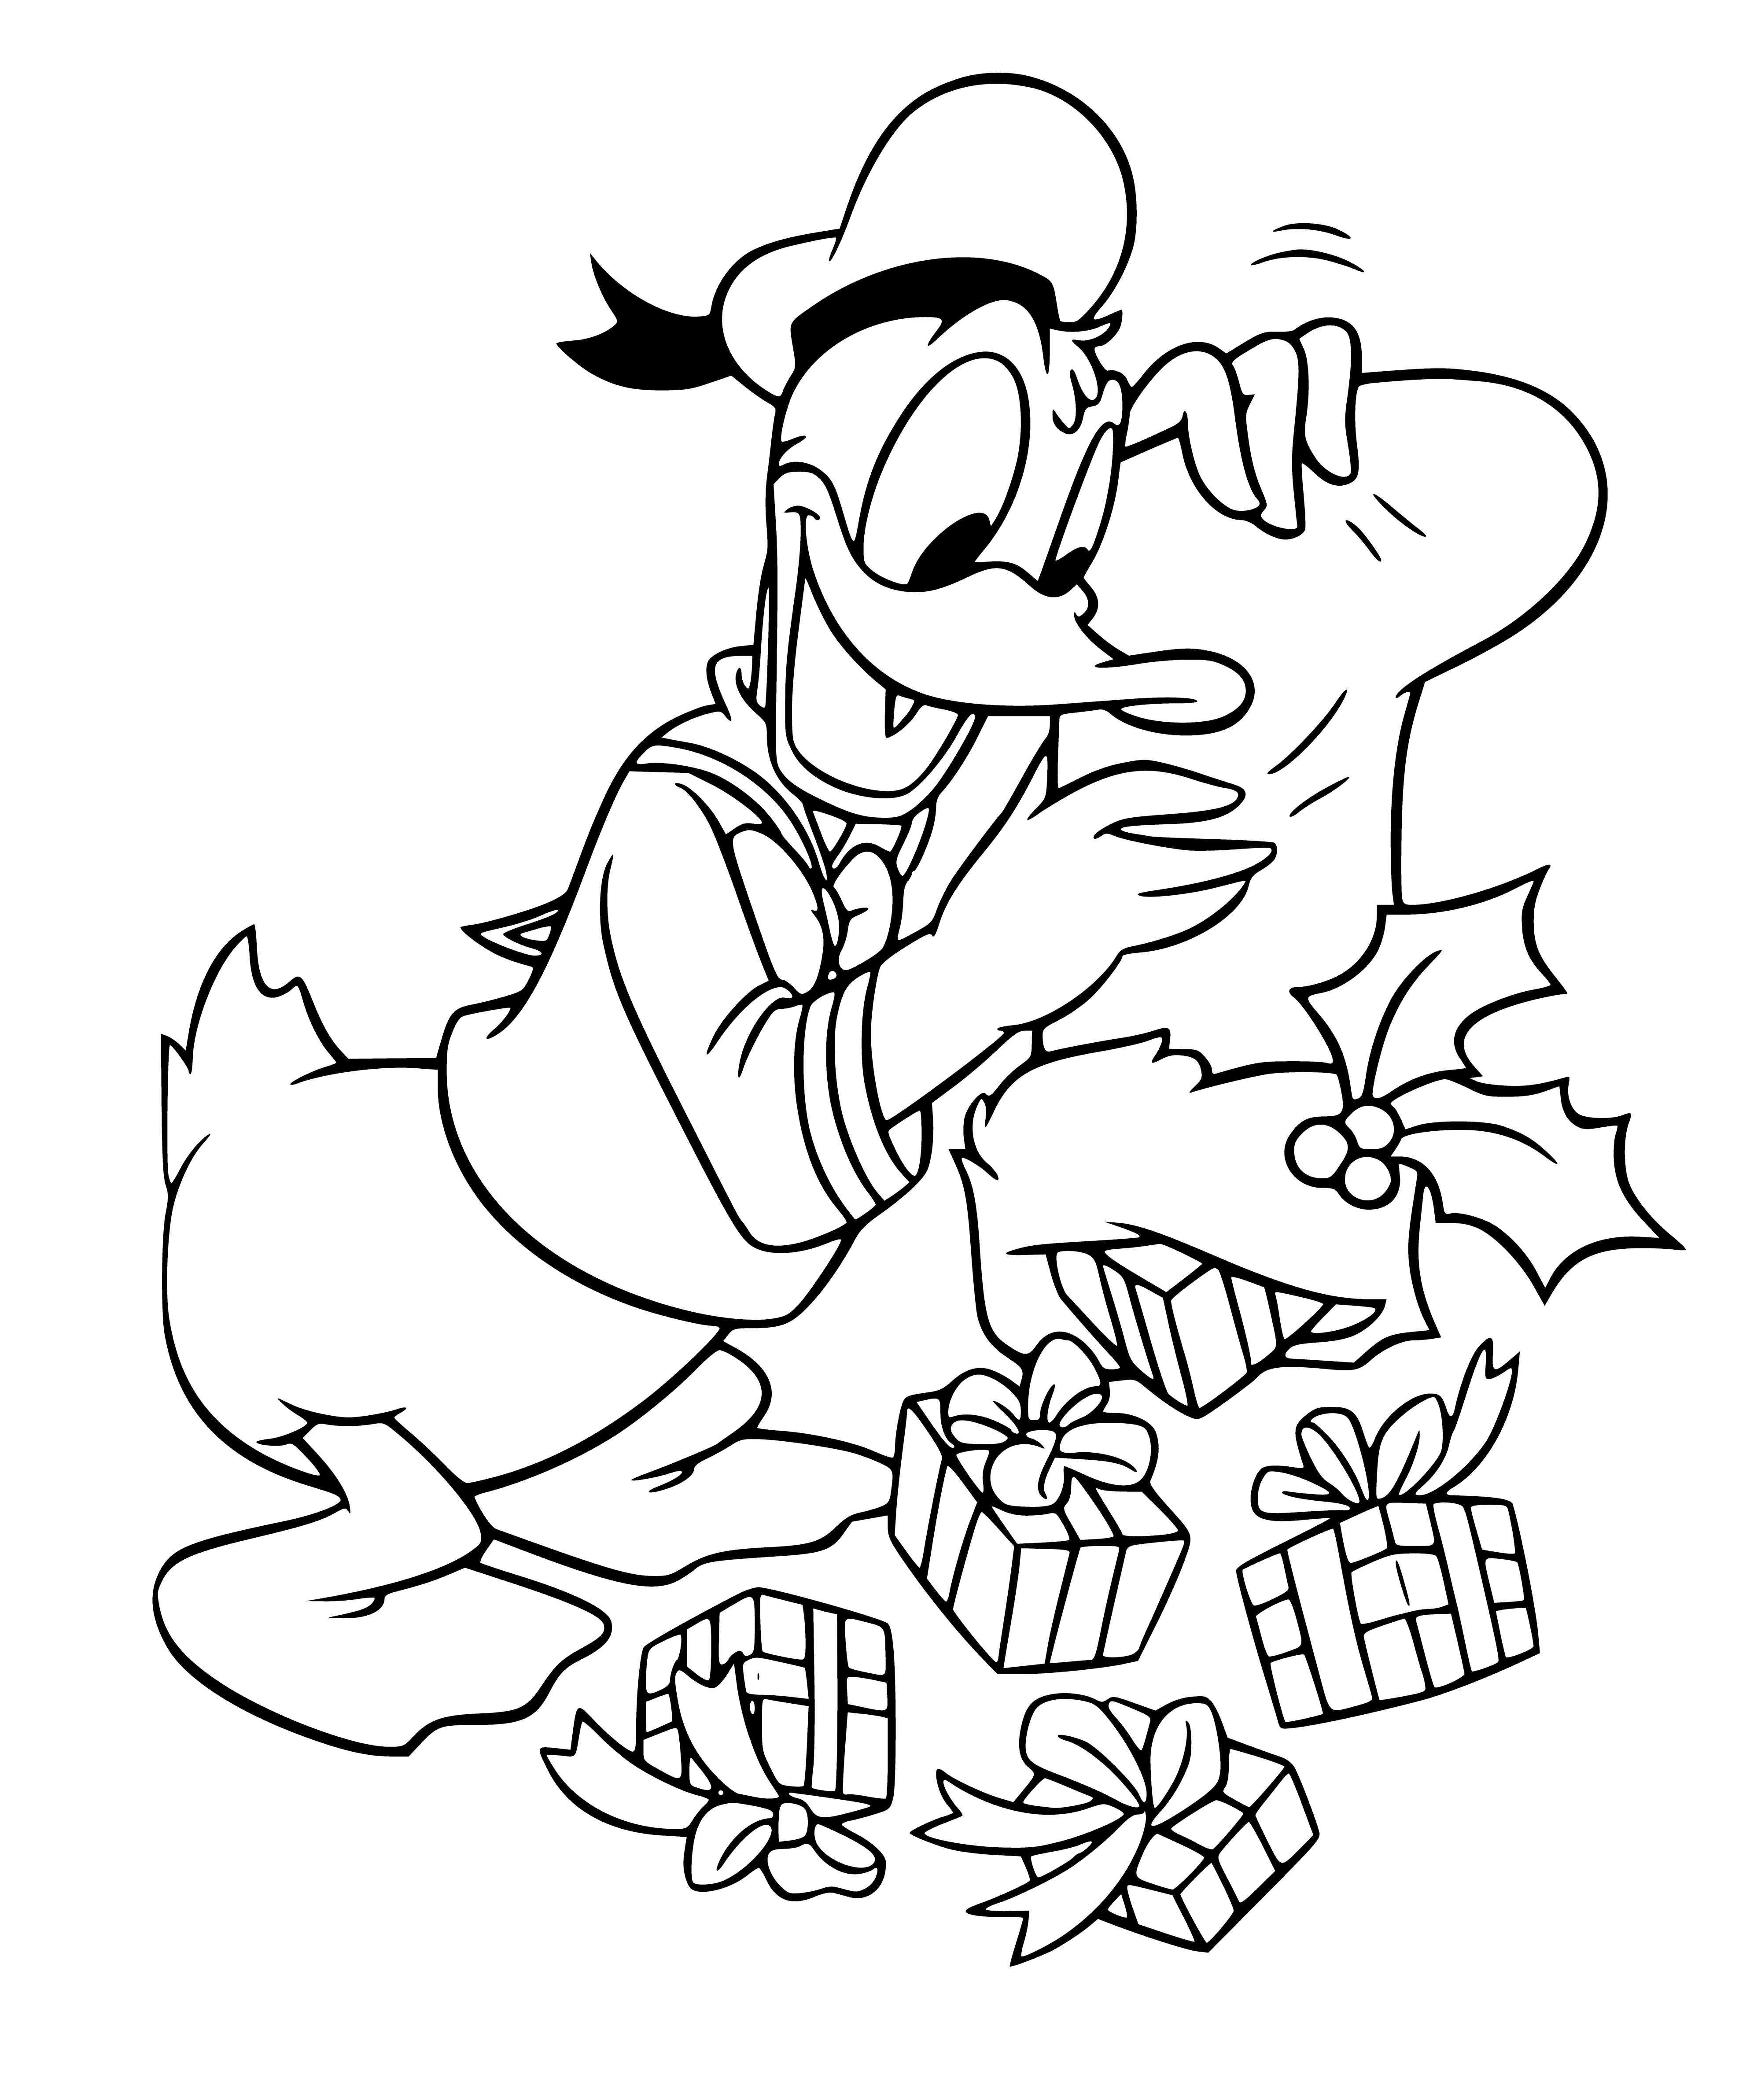 Donald et les cadeaux coloriage